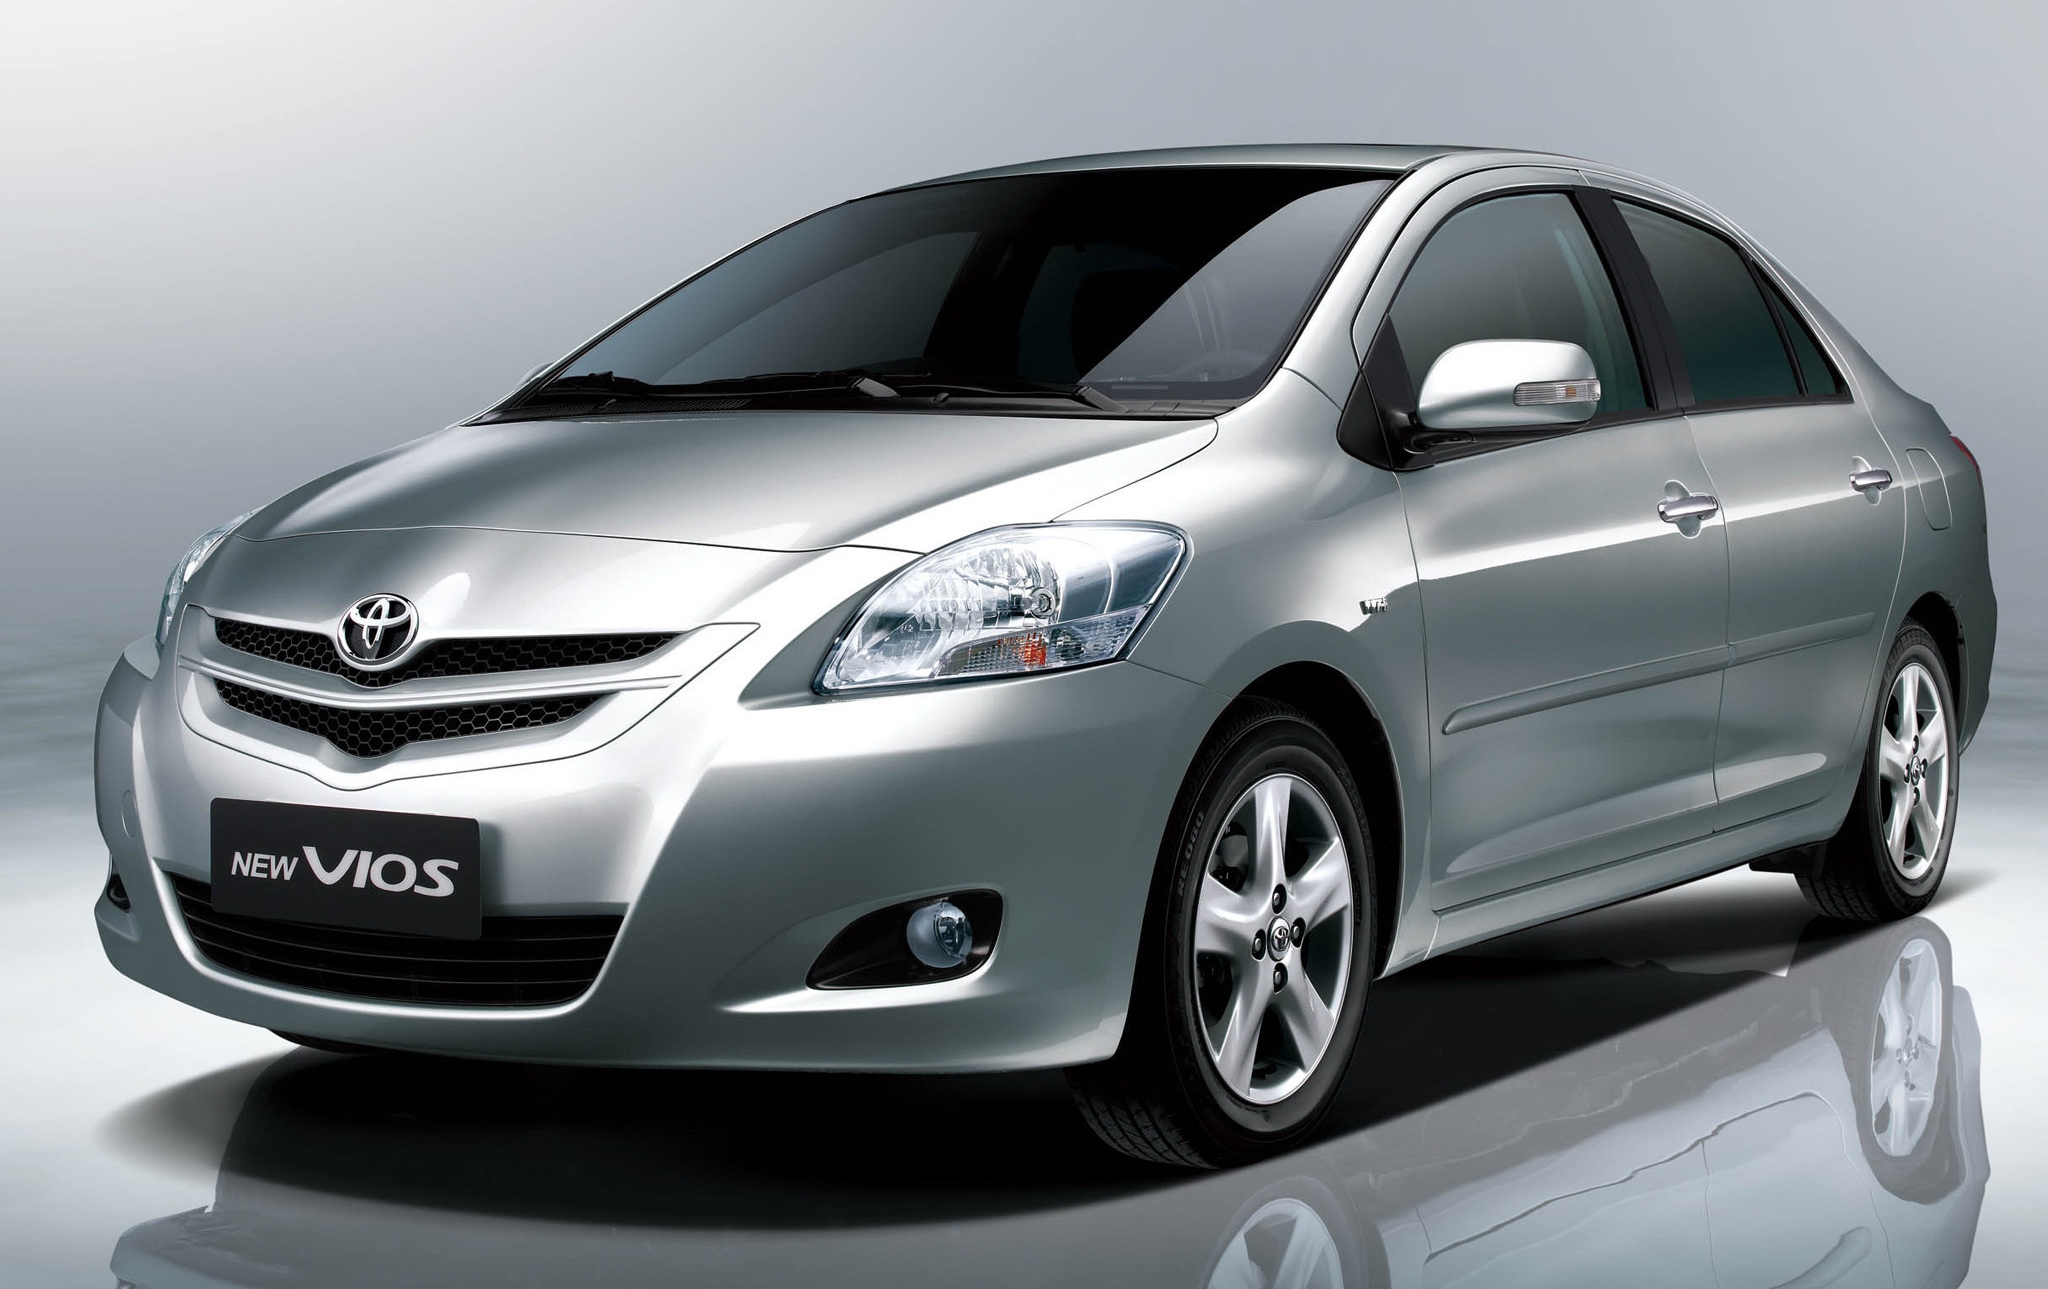 Toyota Vios 2012  mua bán xe Vios 2012 cũ giá rẻ 052023  Bonbanhcom